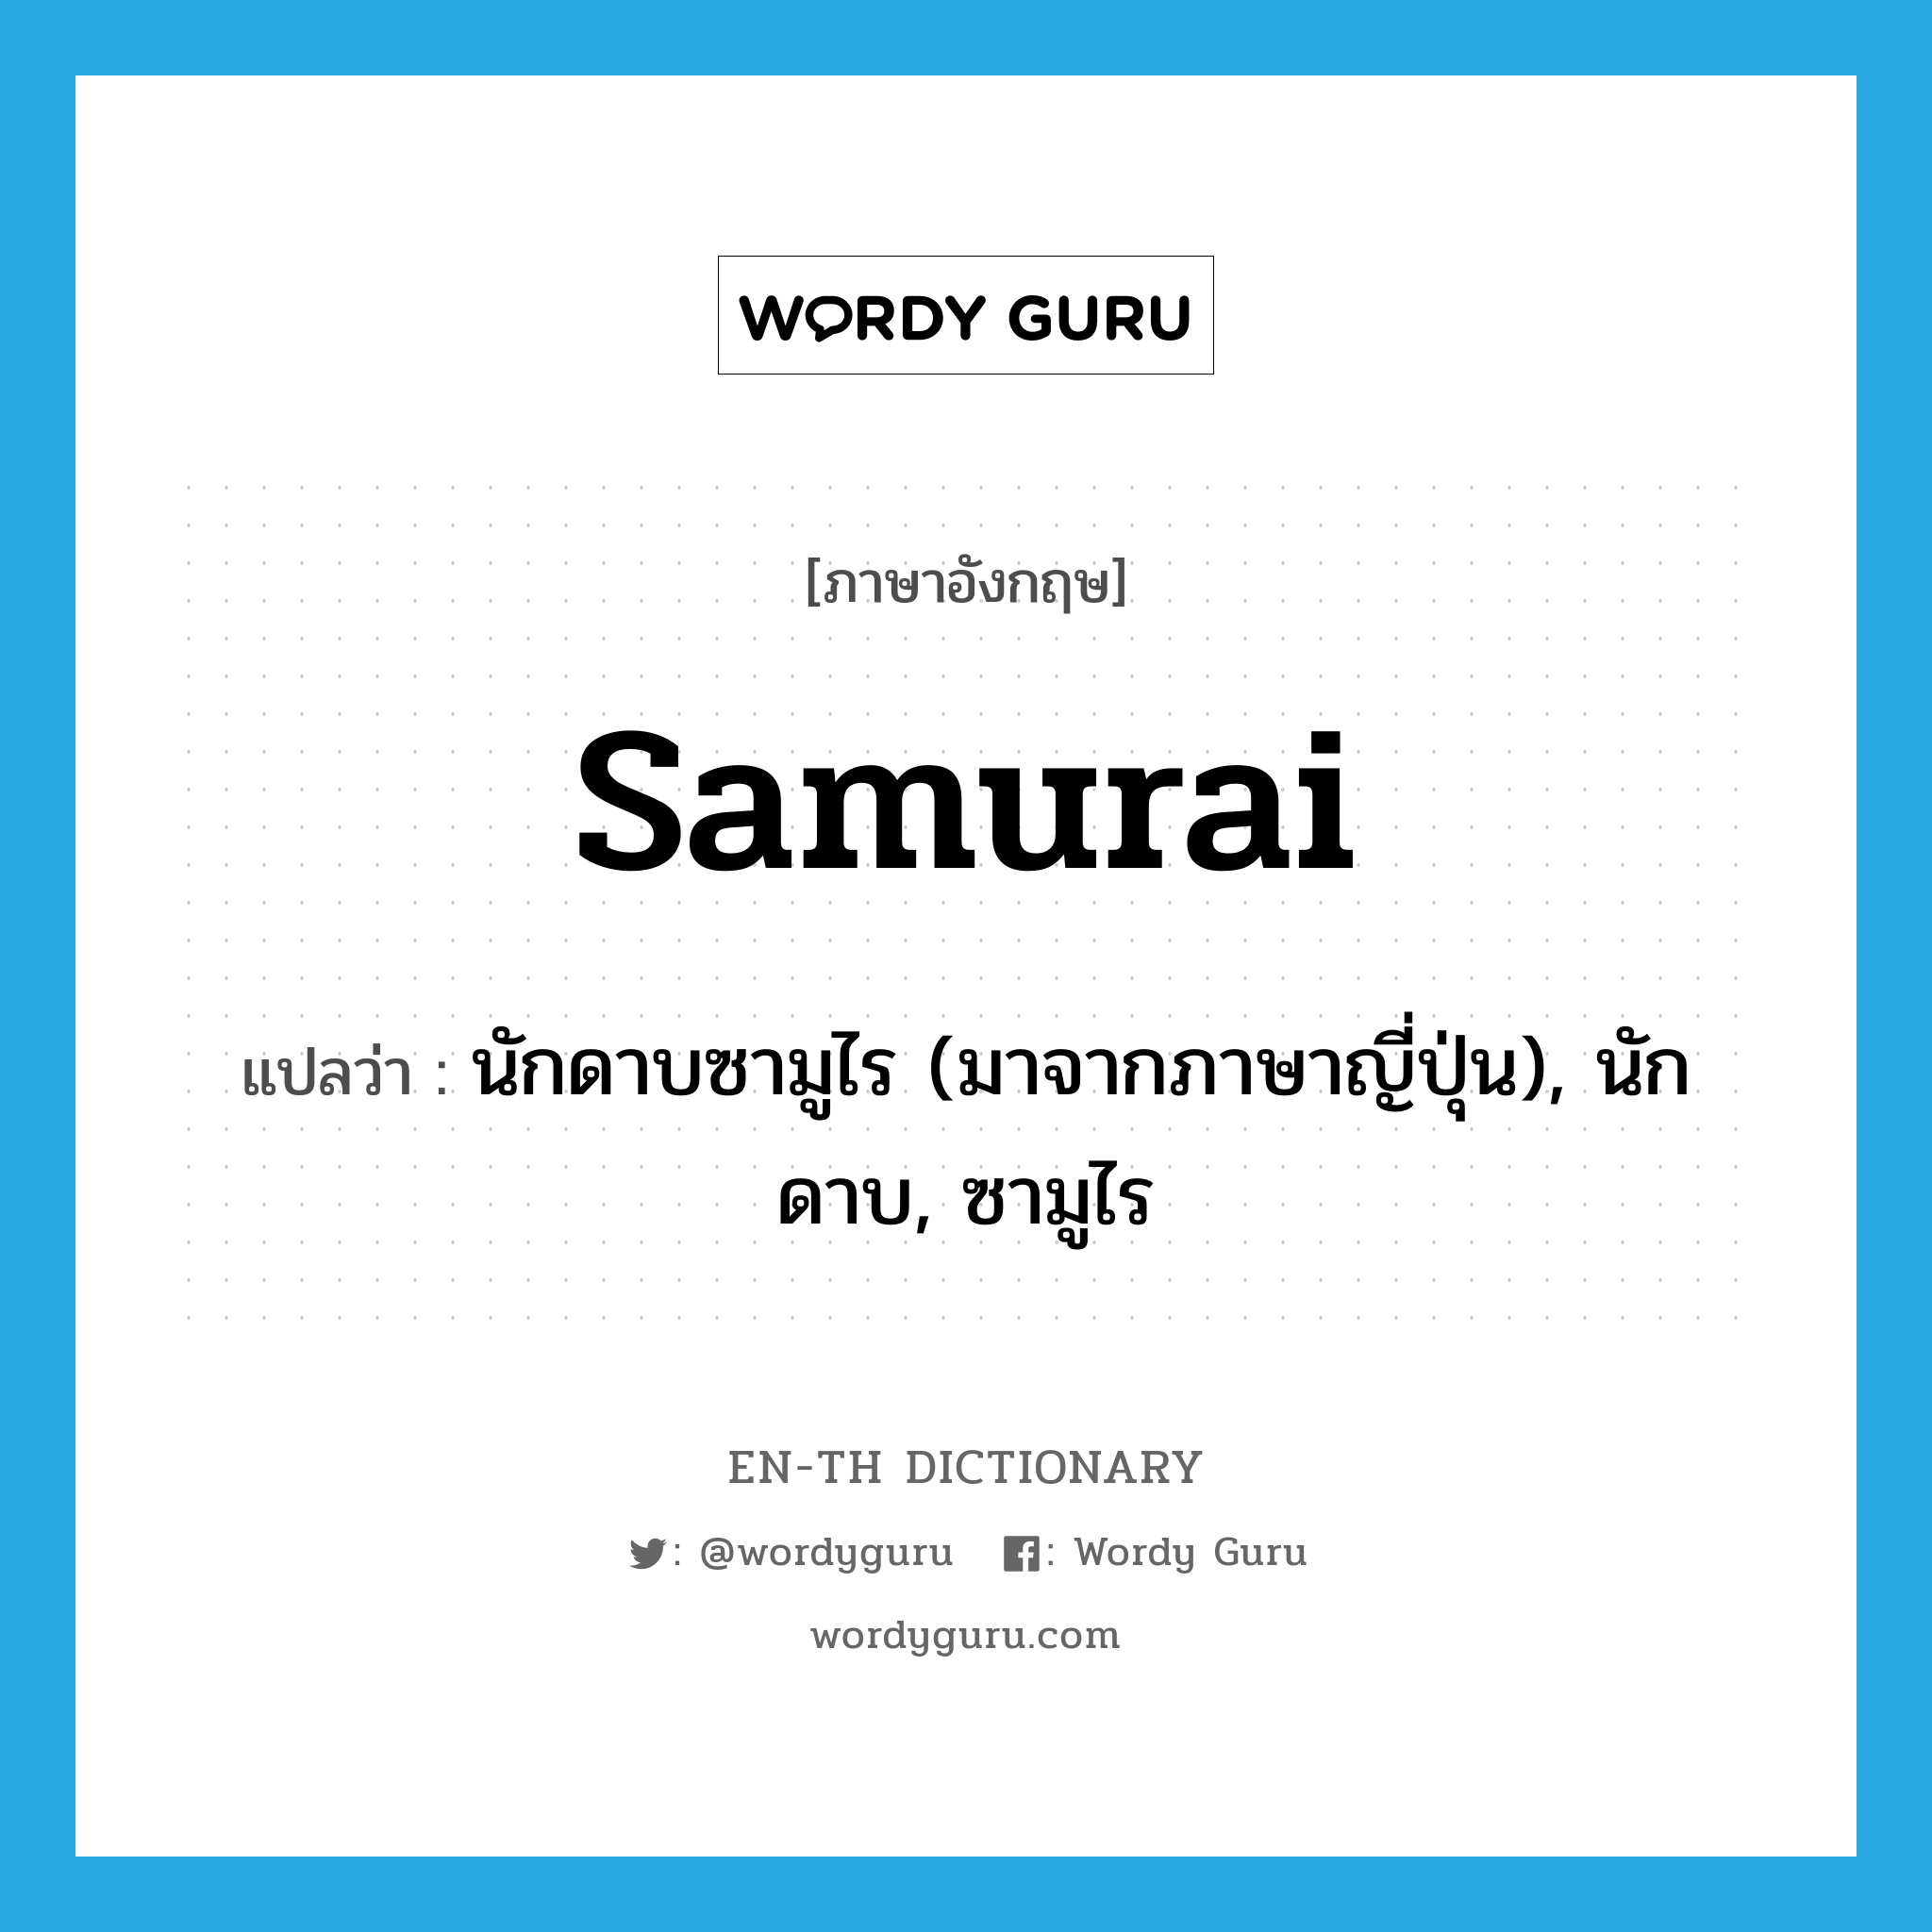 นักดาบซามูไร (มาจากภาษาญี่ปุ่น), นักดาบ, ซามูไร ภาษาอังกฤษ?, คำศัพท์ภาษาอังกฤษ นักดาบซามูไร (มาจากภาษาญี่ปุ่น), นักดาบ, ซามูไร แปลว่า samurai ประเภท N หมวด N